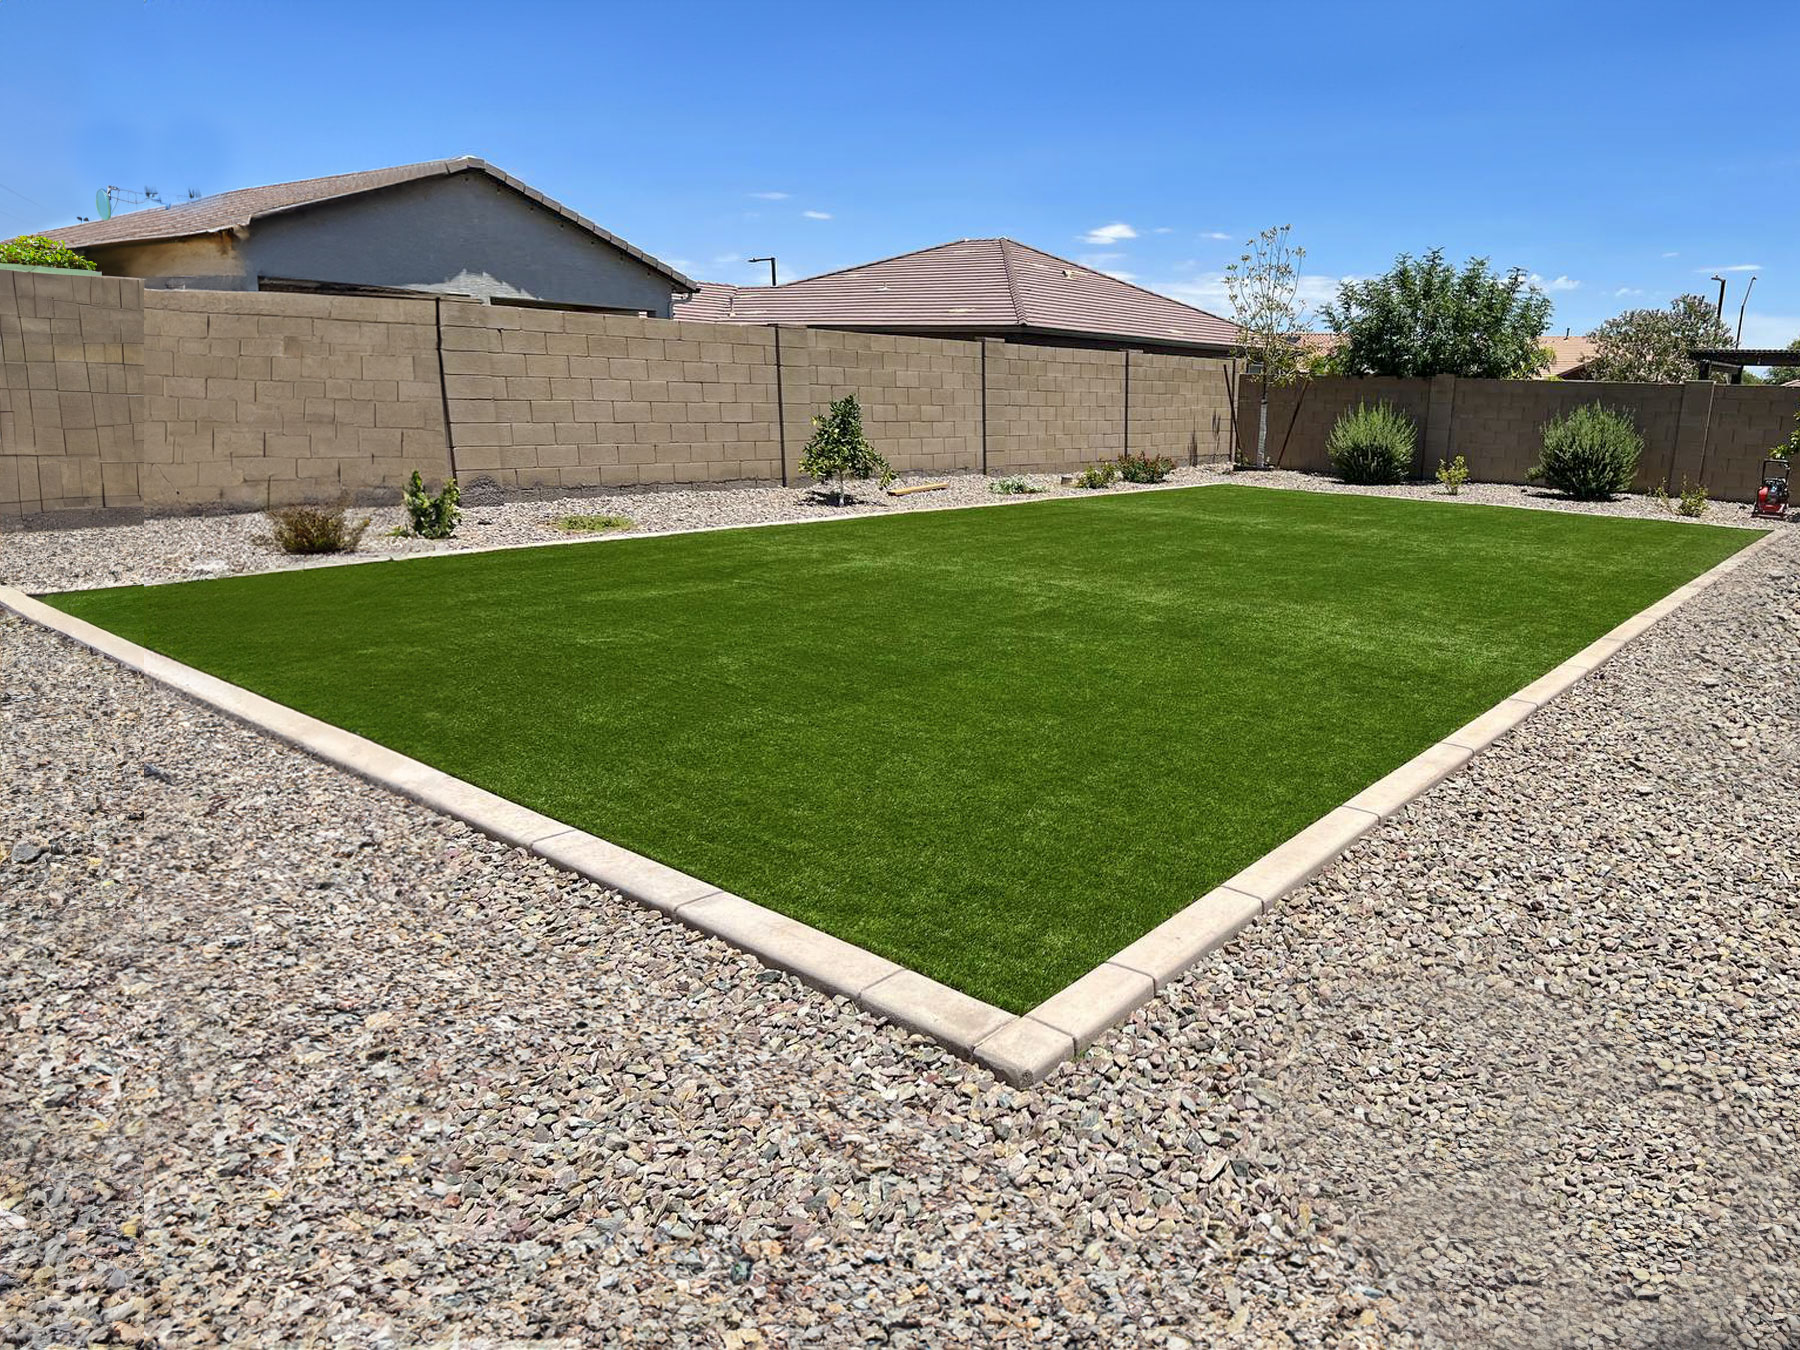 Phoenix, AZ Super Natural-80 artificial grass installation